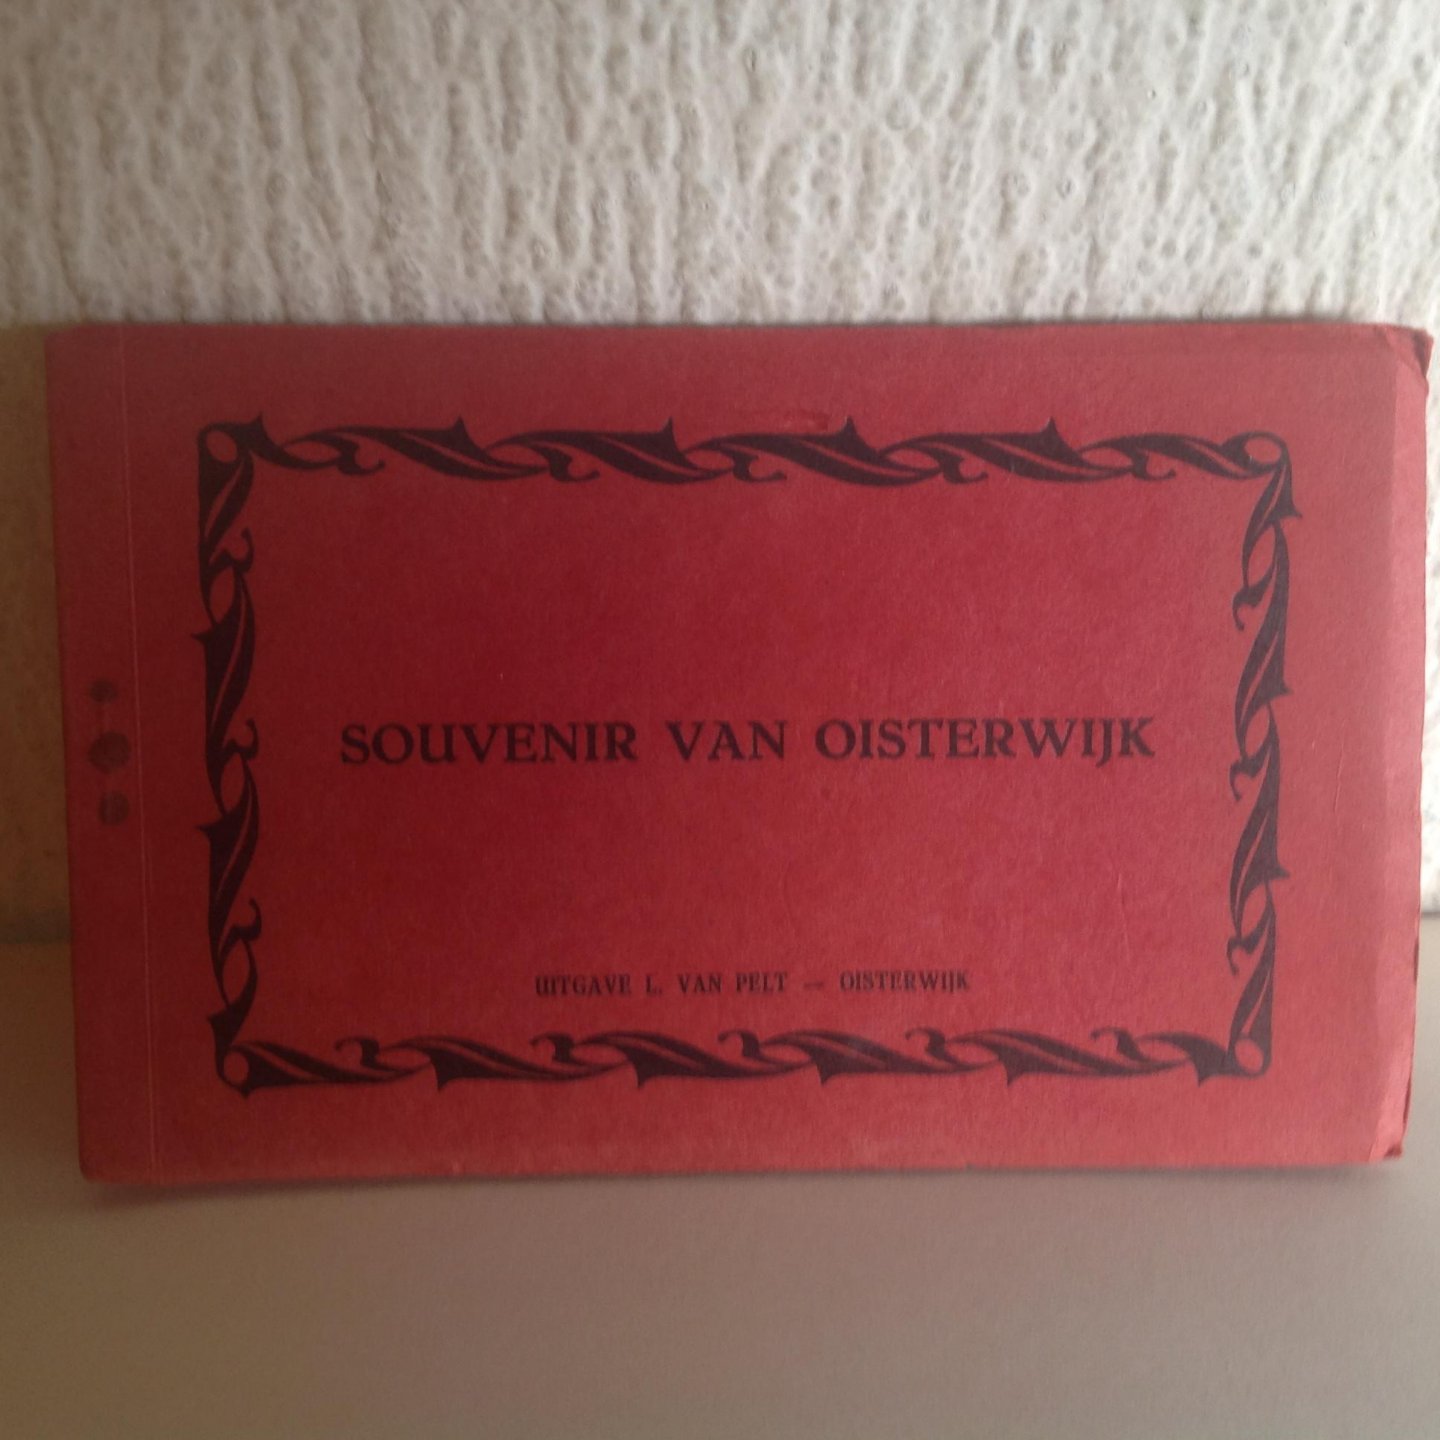  - Ansichtkaarten boekje Oisterwijk ,souvenir